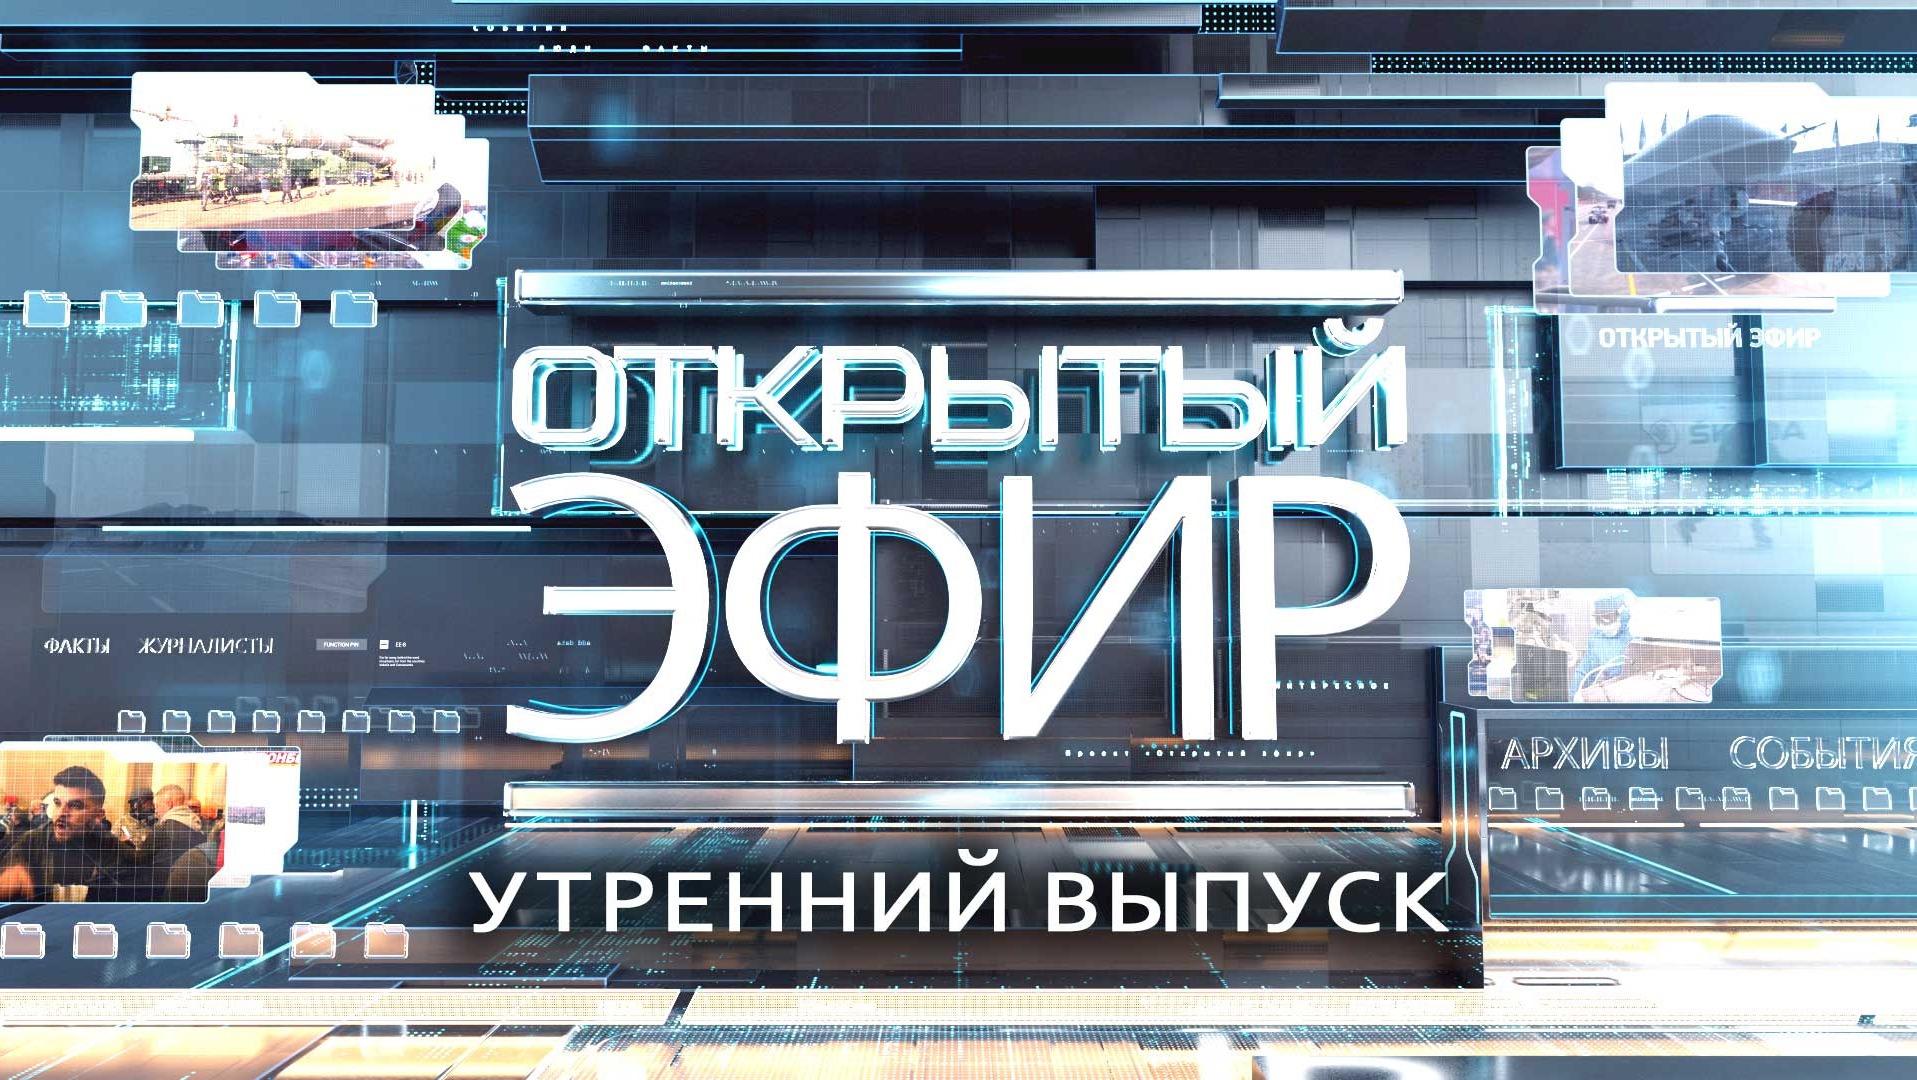 "Открытый эфир" о специальной военной операции в Донбассе. День 460